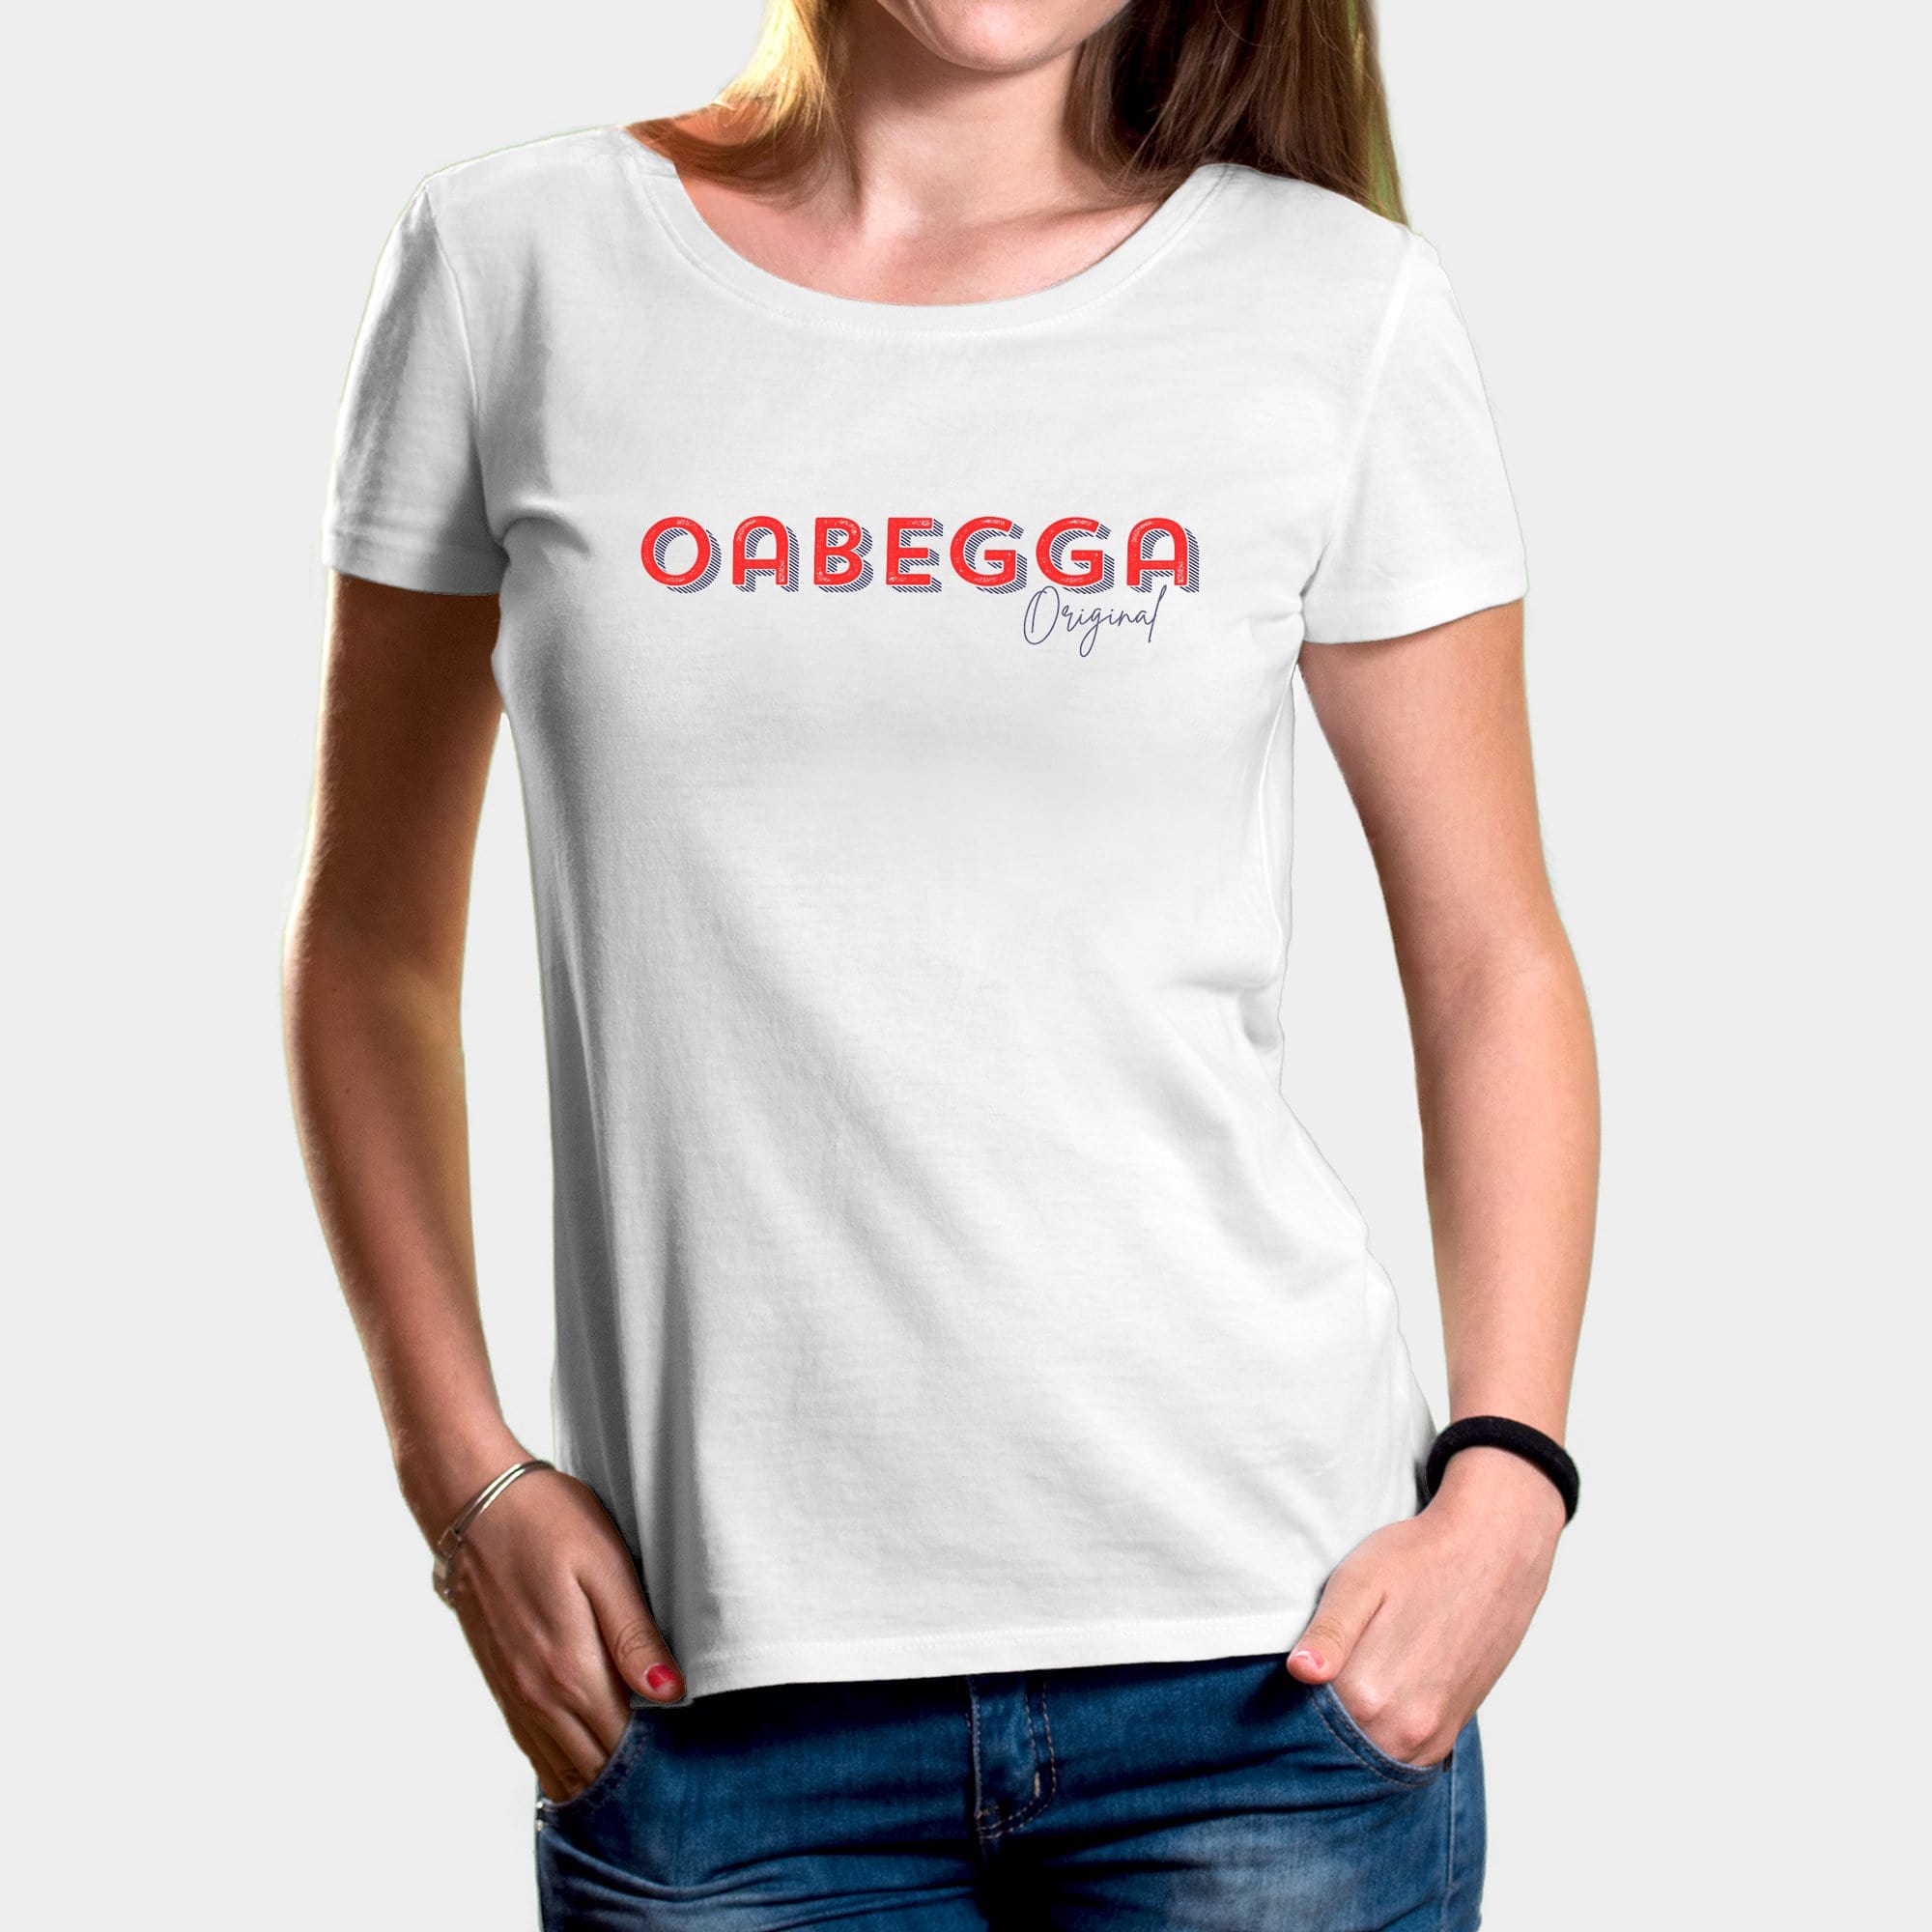 Projekt Damen-T-Shirt "Oabegga Original" XS / weiß - aus nachhaltiger und fairer Produktion